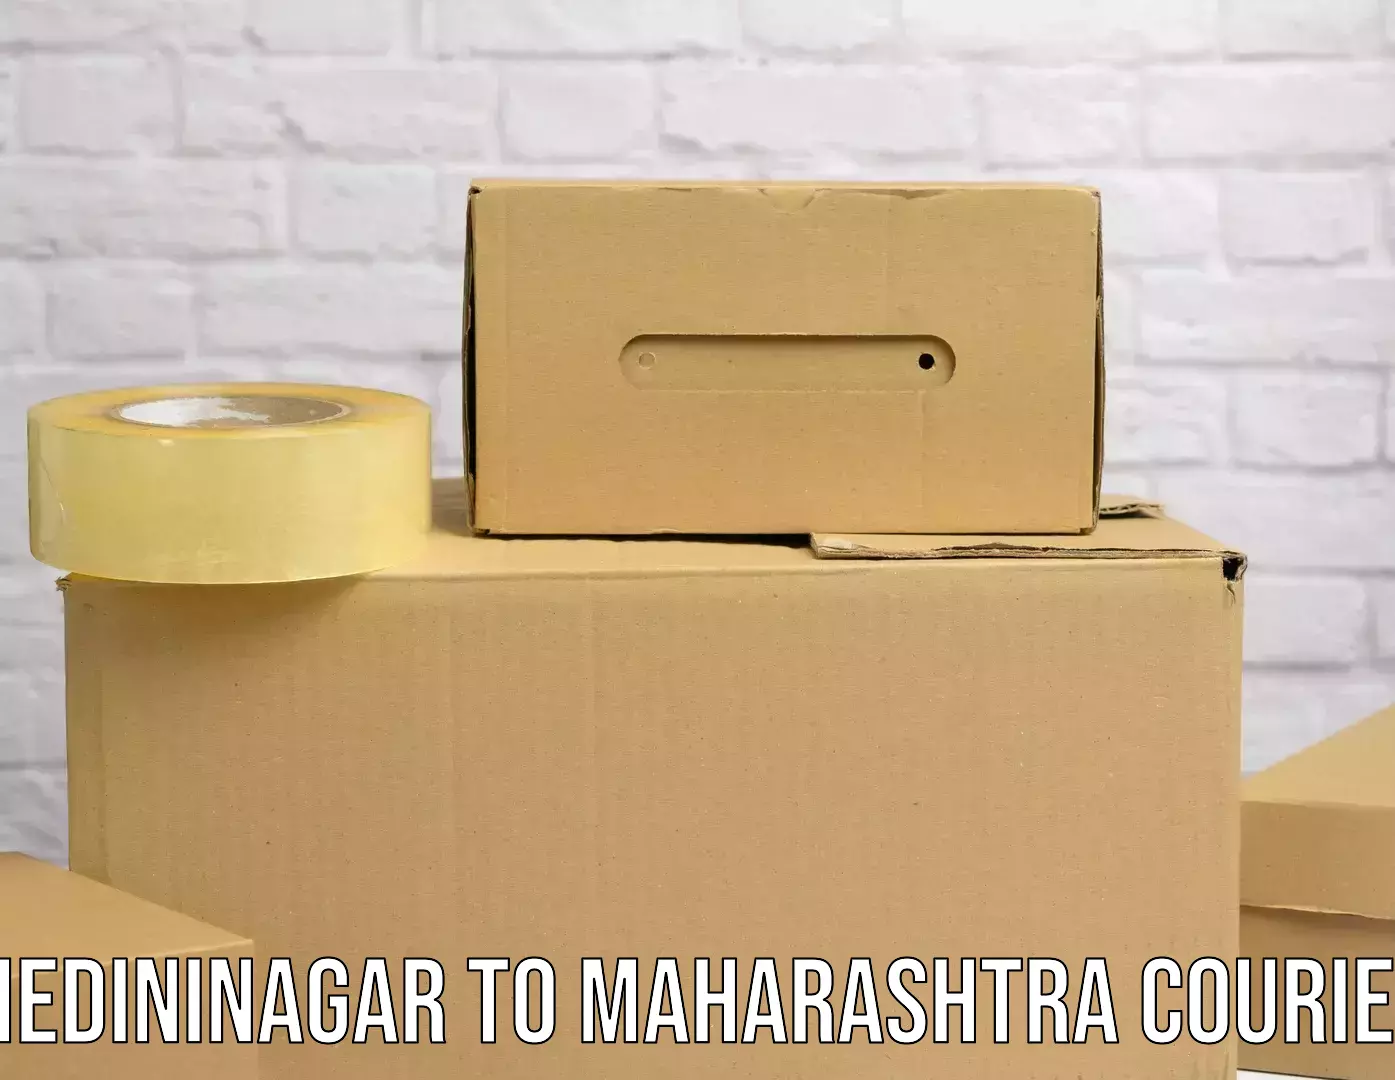 Express logistics providers Medininagar to Maharashtra